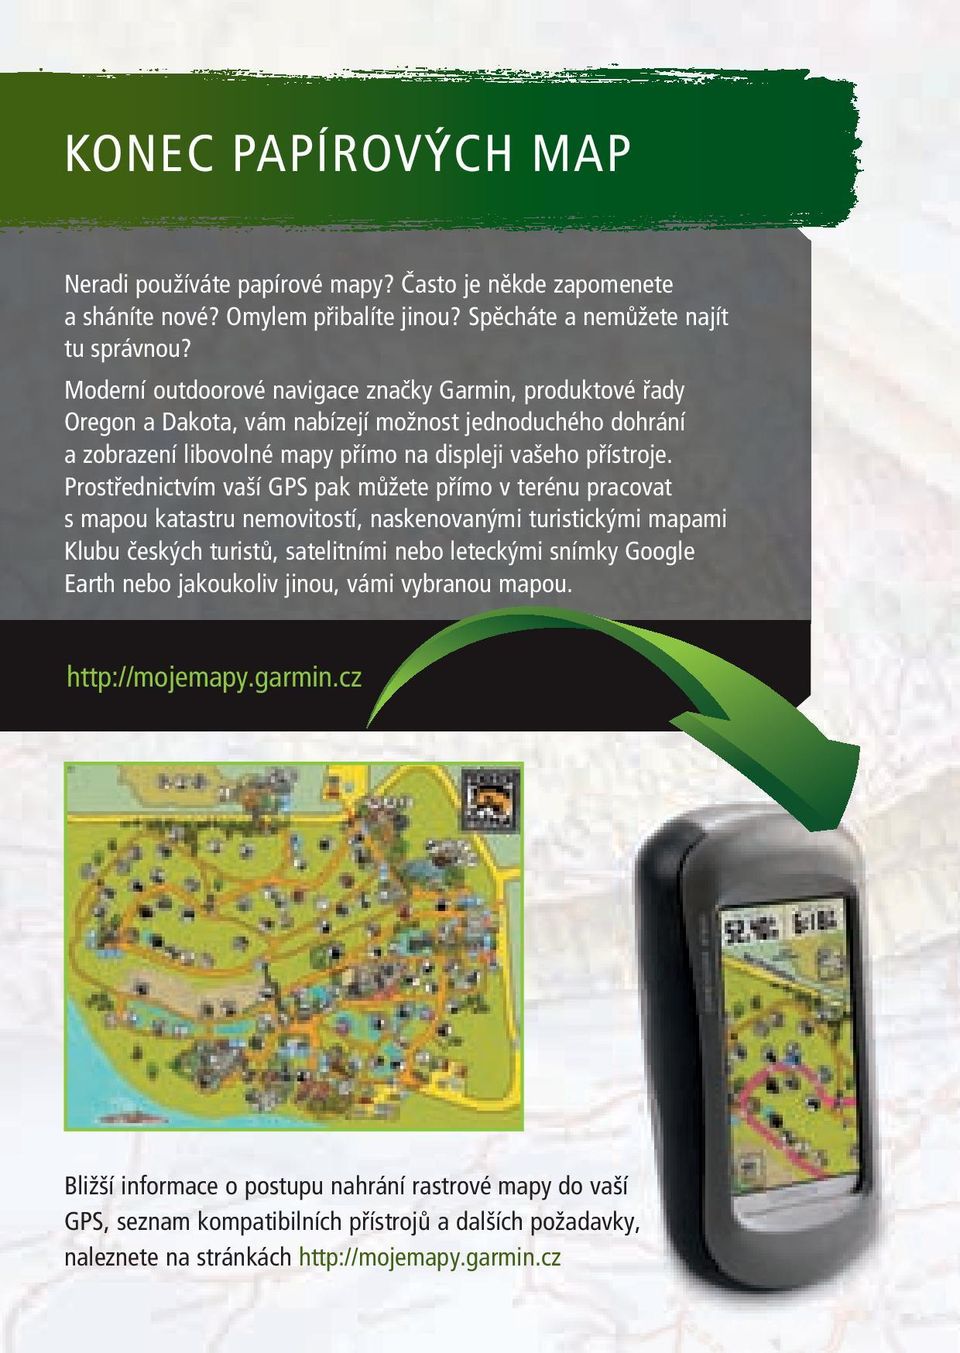 Prostřednictvím vaší GPS pak můžete přímo v terénu pracovat s mapou katastru nemovitostí, naskenovanými turistickými mapami Klubu českých turistů, satelitními nebo leteckými snímky Google